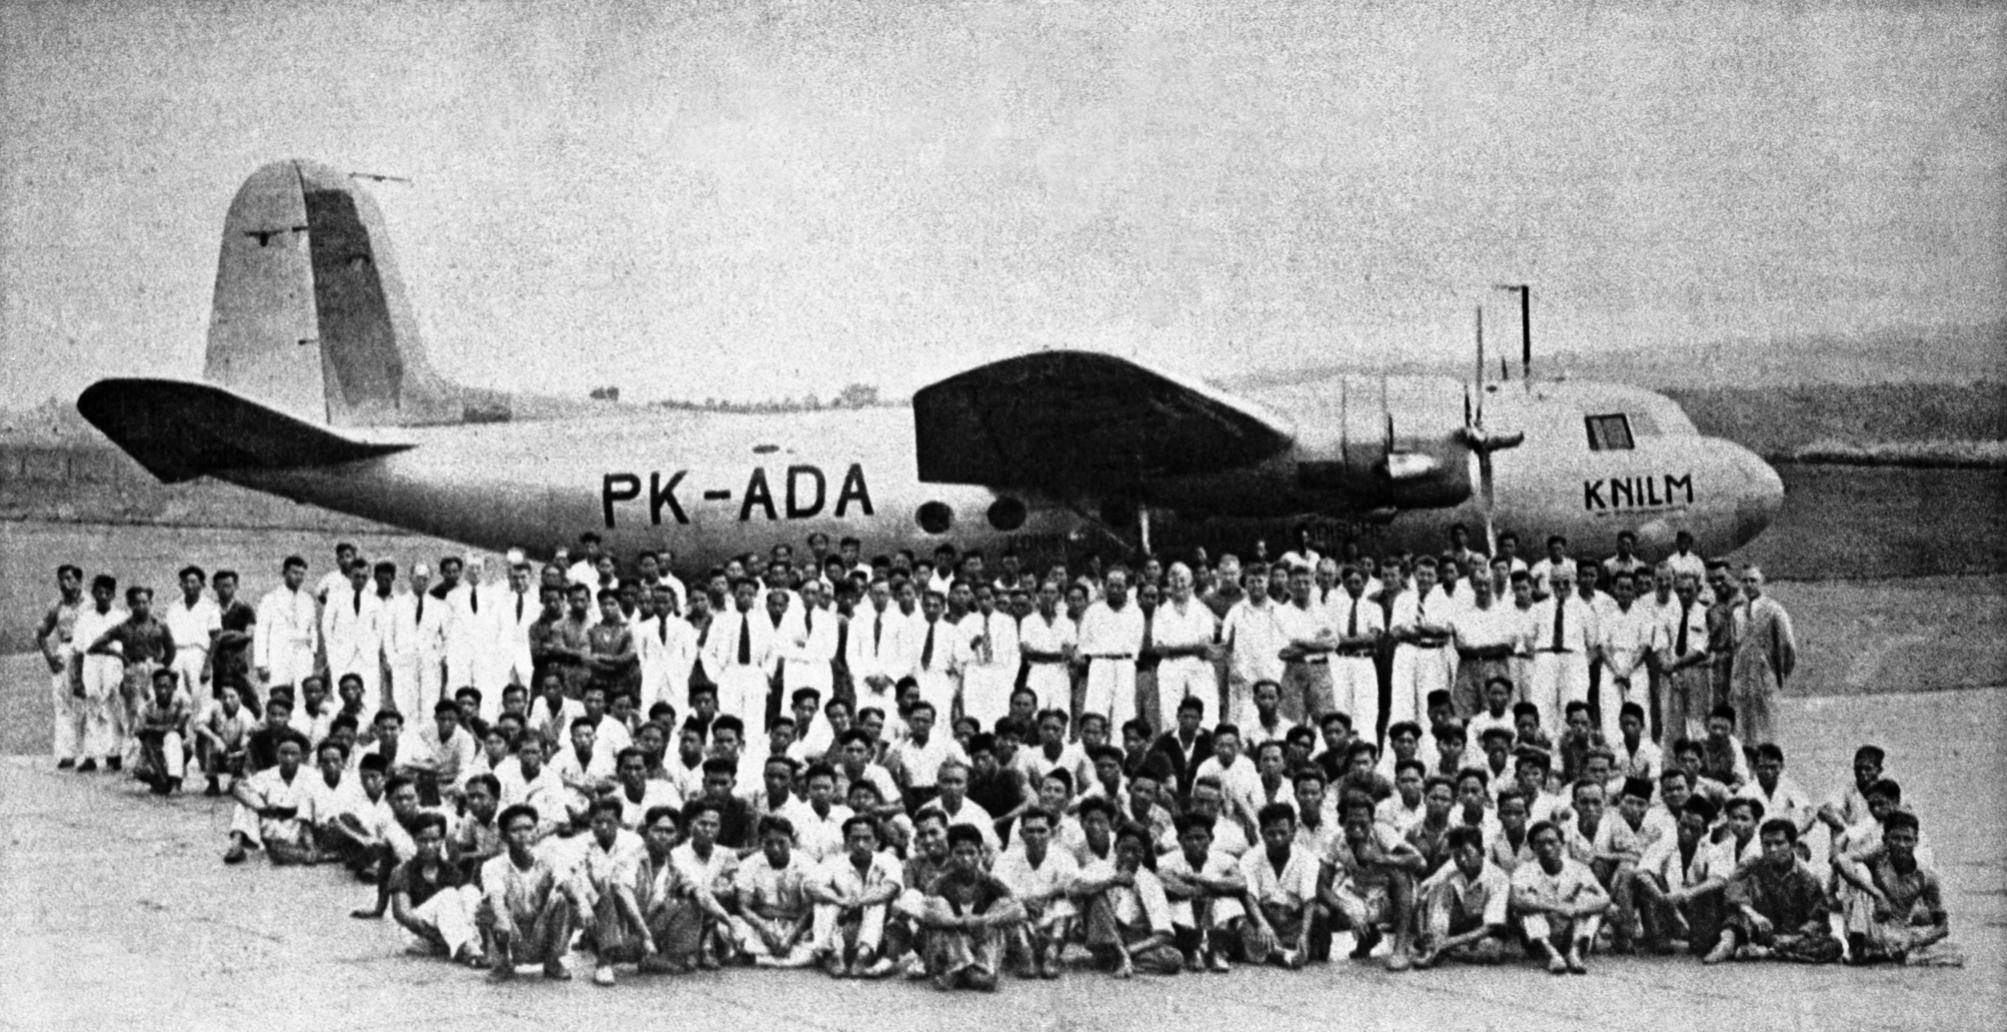 Naam: PK-ADA KNILM big group of people in front of aircraft.jpg
Bekeken: 275
Grootte: 352,2 KB